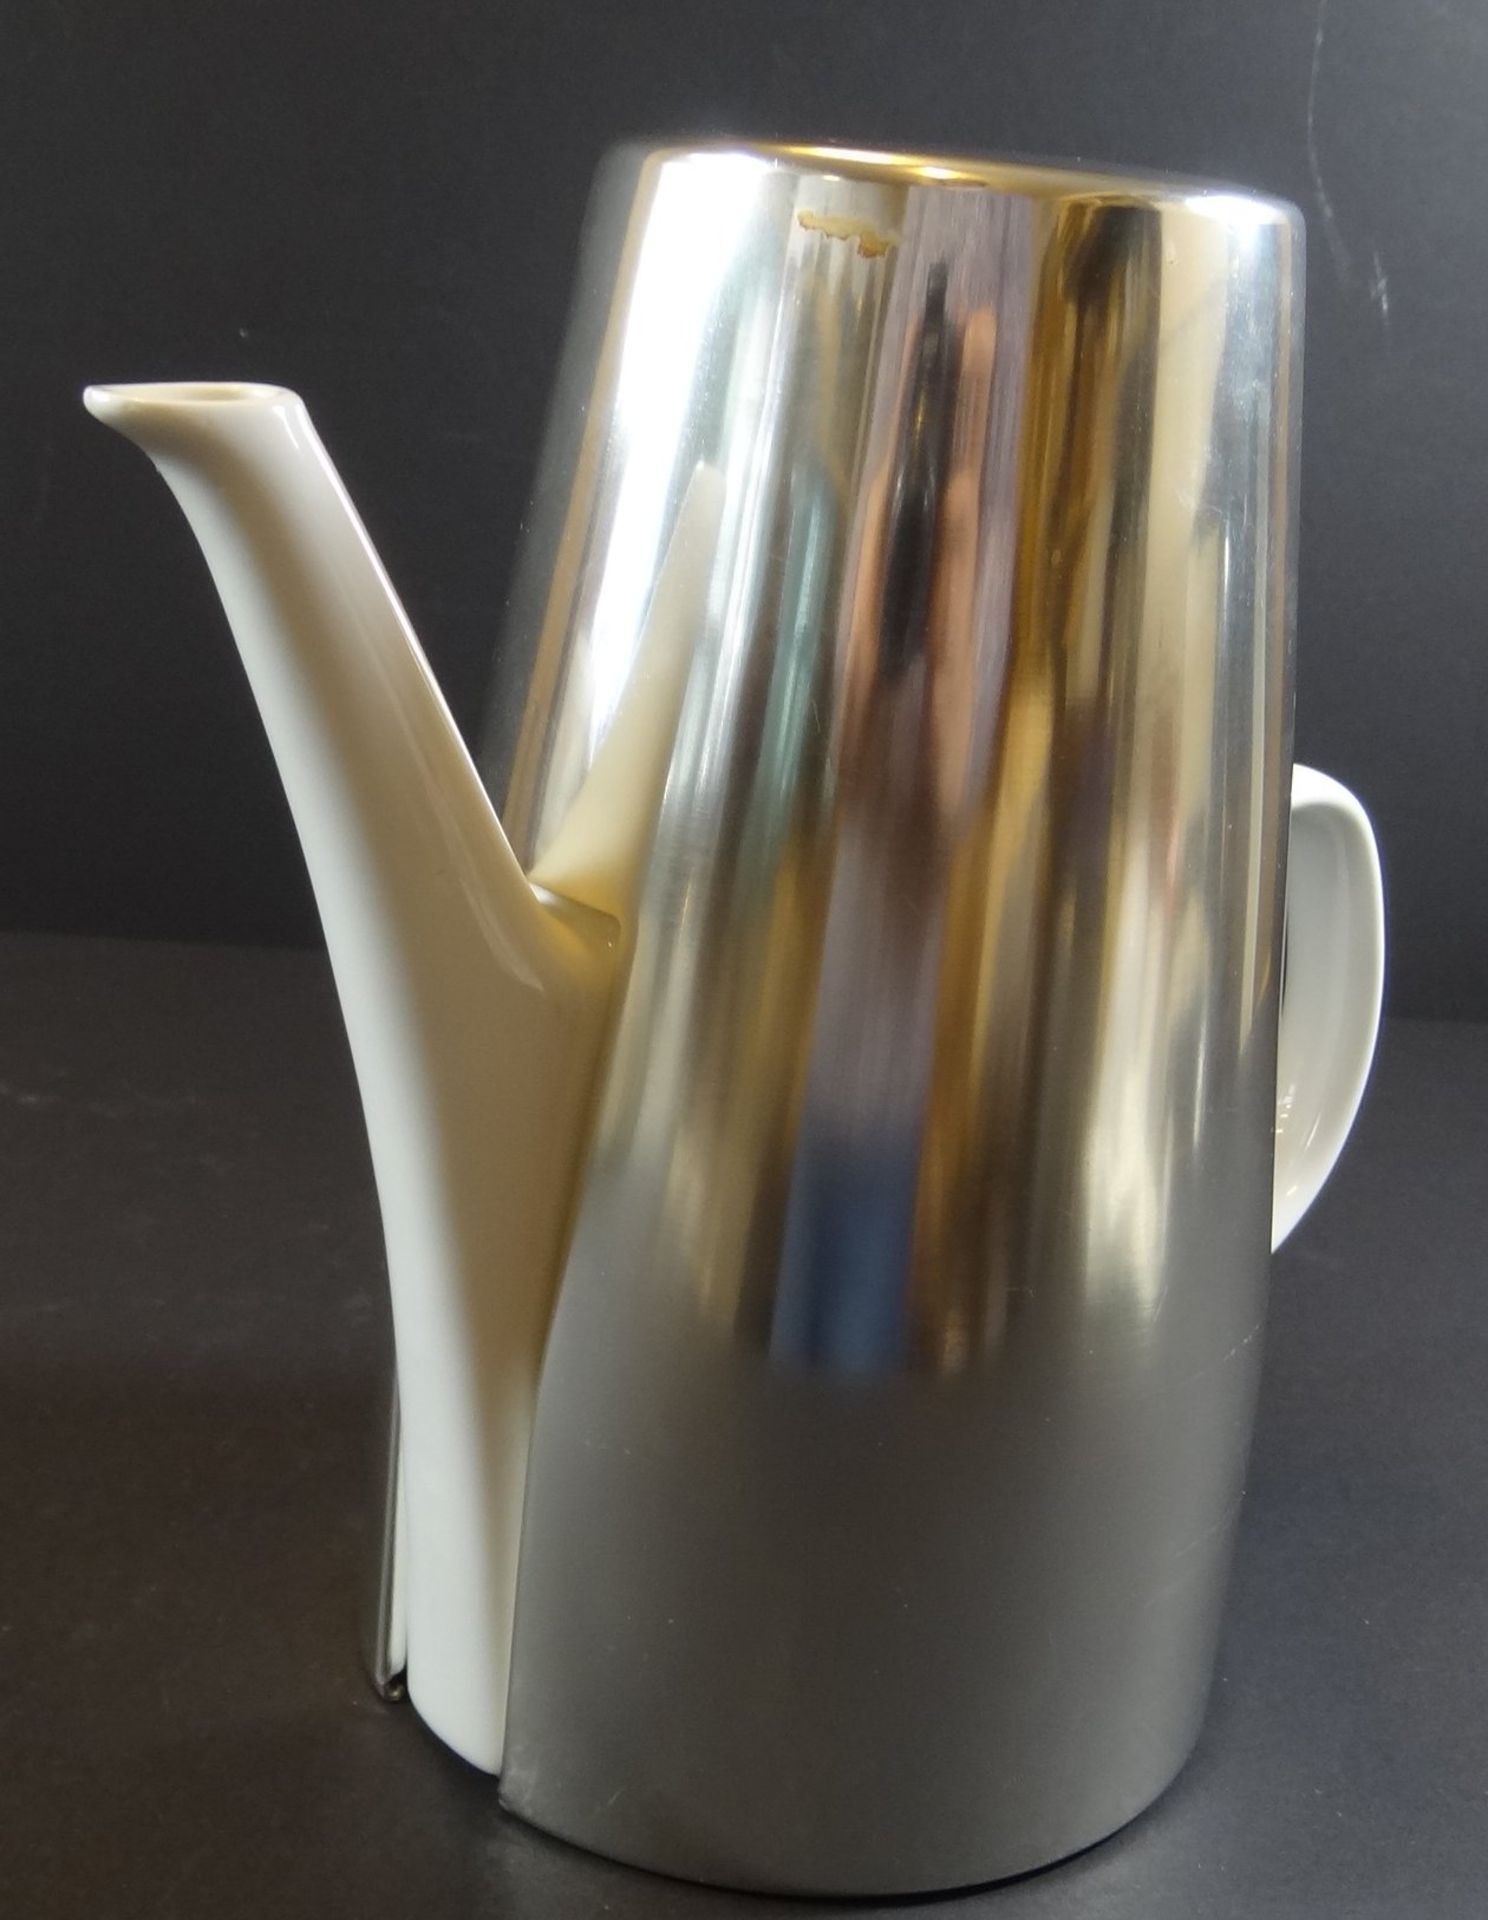 Melitta Kaffeekanne mit versilb. Ummantelung, H-23 cm - Bild 7 aus 7